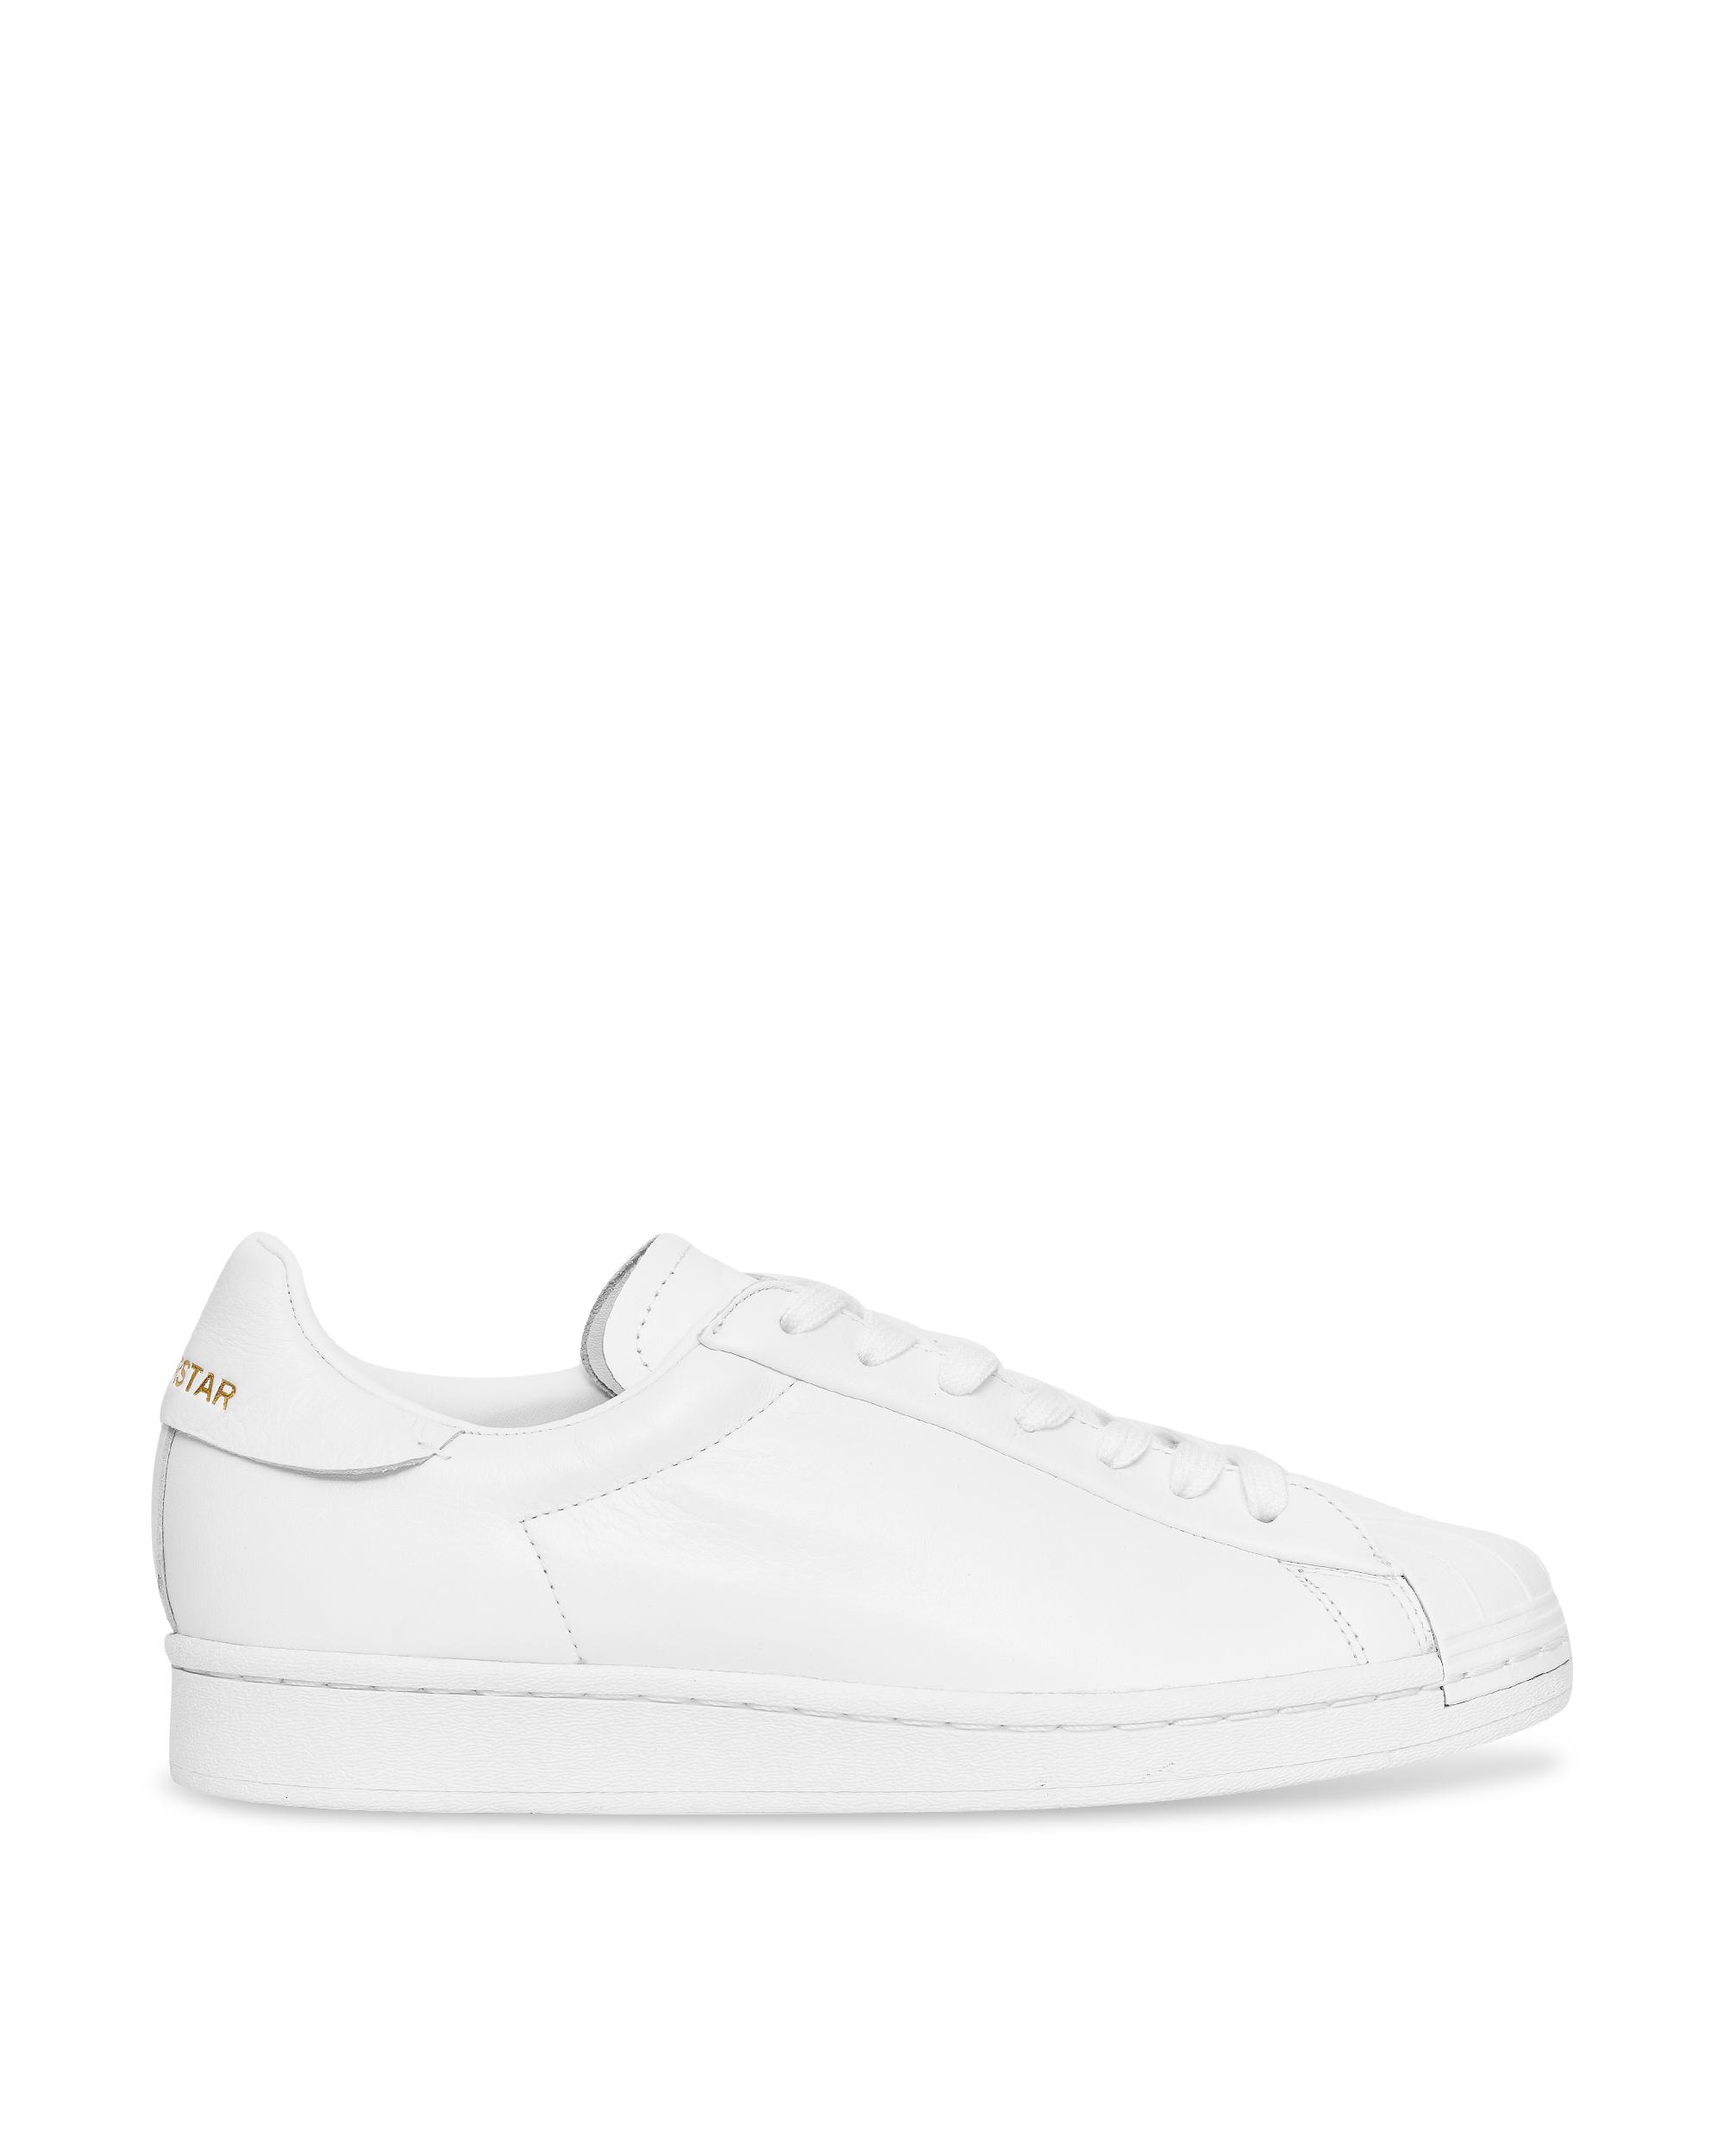 adidas Originals Superstar Pure Lt in White | Lyst